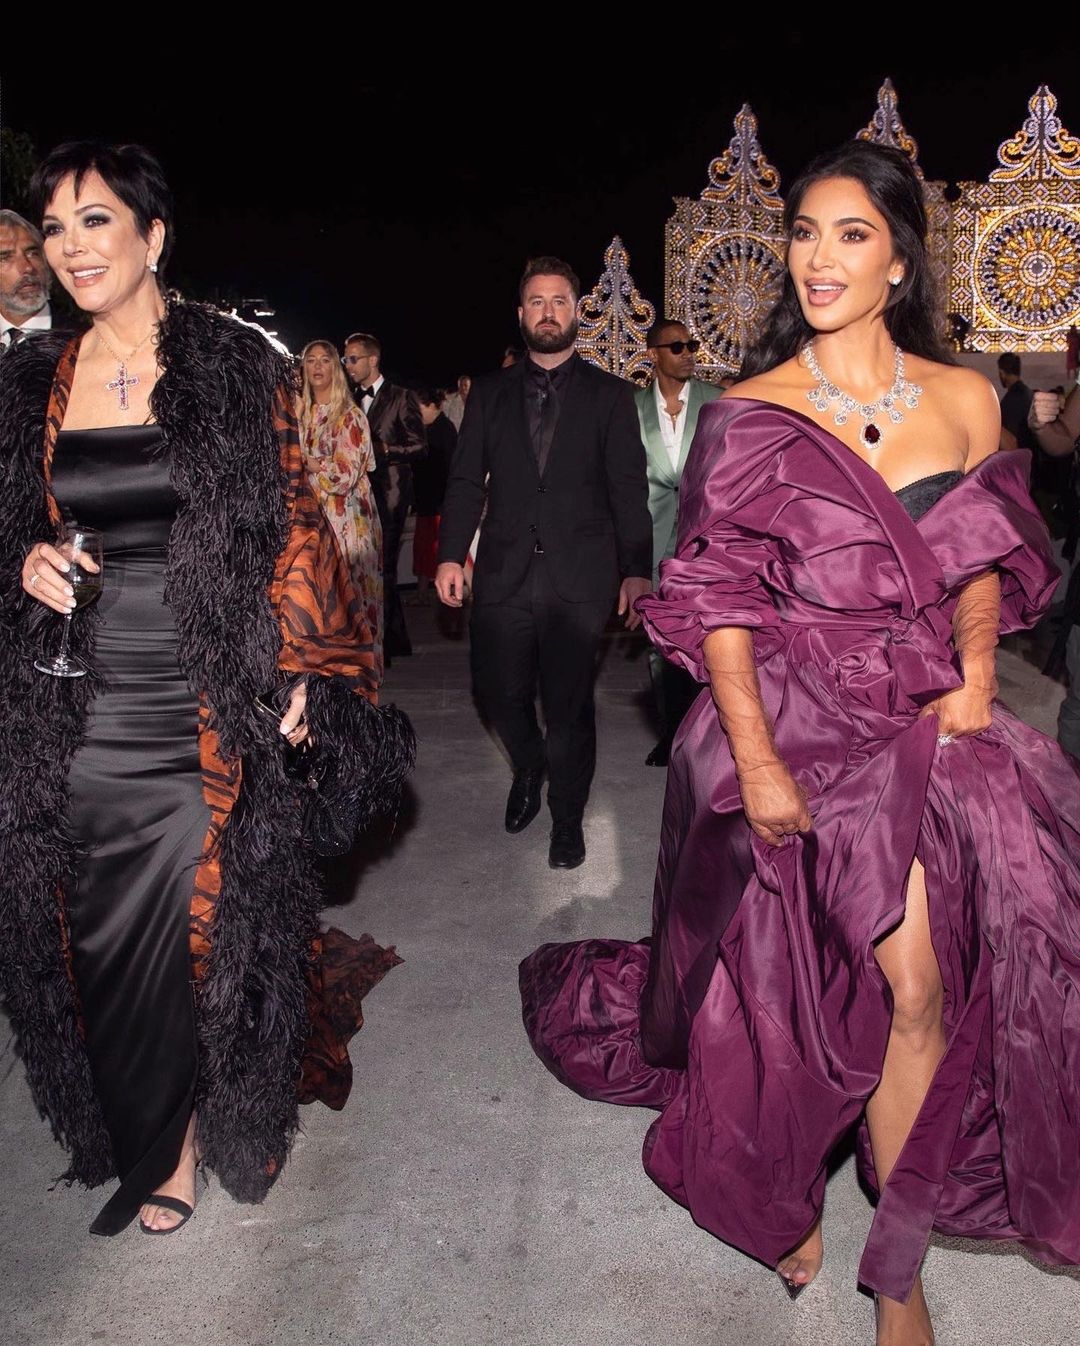 Kim Kardashian brings the drama in purple dress at Dolce & Gabbana show